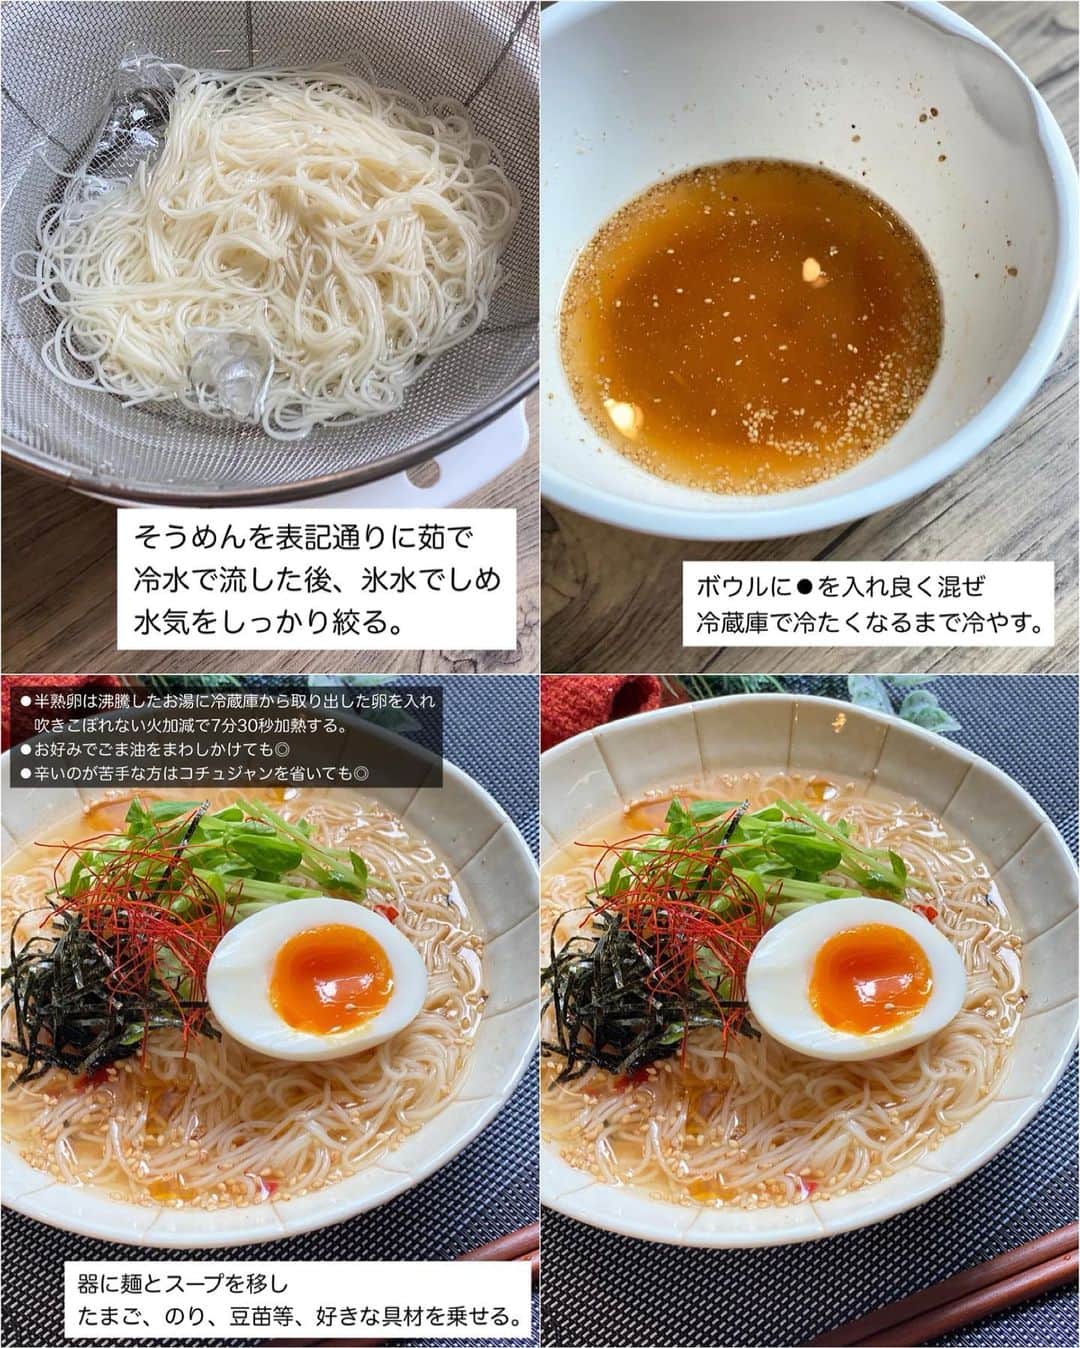 山本菜月さんのインスタグラム写真 - (山本菜月Instagram)「⁡ ⁡ ⁡ ⁡ ┈┈┈┈┈┈┈┈┈┈┈••✼ おうちにある調味料で作る 韓国料理 ┈┈┈┈┈┈┈┈┈┈┈••✼ ⁡ ⁡ ⁡ こんにちは♡ 菜月 (@zubora_meshi_ )です♩ ⁡ 今日は韓国料理屋さんに 行った気分になれる 王道のレシピ４品をまとめました。 ⁡ どのレシピも それだけ作れば満足できる ボリューム感のある内容になっています♡ ⁡ 難しい工程ははぶき、家の調味料で 簡単に作れるので是非お試しください✨ ⁡ ⁡ ⁡ ⁡ ｡.ꕤ⌒⌒⌒⌒⌒⌒ꕤ⌒⌒⌒⌒⌒⌒ꕤ.｡ ⁡ ⁡ ⁡ ⁡ ⚫︎ヤンニョムチキン ⁡ 【材料2人分】 鶏もも肉 300g 塩胡椒 少々 片栗粉 大さじ2 白ごま 適量 サラダ油 大さじ2 ★ ケチャップ 大さじ1 みりん 大さじ1 砂糖 大さじ1 コチュジャン 大さじ1 しょうゆ 小さじ1 にんにくチューブ 小さじ1/2 ⁡ 【作り方】 ①鶏肉を一口大に切り 　塩胡椒をして片栗粉をまぶす。 ②★を合わせておく。 ③フライパンに油をひき①を揚げ焼きにする。 ④フライパンに油が残っていれば拭き取り 　★を絡め白ごまを振ったら完成。 ⁡ 【メモ】 鶏肉を揚げ焼きにする際は中火がベスト。 弱すぎるとベトベトになり 強すぎると火が通る前に焦げてしまいます。 ⁡ ⁡ ⁡ ＊＊＊ ⁡ ⁡ ⁡ ⚫︎旨辛ビビンバ ⁡ 【材料2.3人分】 合い挽き肉 250g ★醤油、砂糖、みりん、コチュジャン 各大さじ1 ★にんにく＆生姜チューブ 小さじ1 ほうれん草 3株 にんじん 1/2本 大豆もやし 1/2袋 (もやしでも◎) ⚫︎ごま油 大さじ2 ⚫︎醤油 大さじ1/2 ⚫︎鶏がらスープの素 小さじ1 ⚫︎塩 適量 たまご 作る分 ⁡ 【作り方】 ⁡ ①にんじん細切り、ほうれん草4cm幅に切る。 　もやしとたまごは冷蔵庫から出しておく。 ②鍋2つに水をはり沸騰させ 　片方は火を止めたまごを入れ12〜13分放置。 　時間がたったら水につけておく。 　もう片方は野菜を入れ2分30秒茹でる。 ③野菜のザルにあげておき 　その間にフライパンにひき肉を入れ 　パラパラになるまで炒め★を入れ 　水分が少なくなるまで炒める。 ④野菜の水気をしっかりしぼり⚫︎を和える。 ⑤ごはんに②③④とキムチ、白ごま振り完成。 ⁡ ⁡ ⁡ ＊＊＊ ⁡ ⁡ ⁡ ⚫︎冷麺風そうめん ⁡ 【1人分】(2人分は倍量) そうめん 1束 ごま油 適宜 ⚫︎水 100cc ⚫︎お酢 大さじ1 ⚫︎醤油 大さじ1/2 ⚫︎鶏がらスープの素、砂糖 各小さじ1/2 ⚫︎にんにくチューブ、コチュジャン 各2cm 　(辛さが苦手な方は抜いて◎) ⚫︎すりごま 大さじ1 たまご、のり、豆苗などはお好みで。 ⁡ 【作り方】 ①ボウルに⚫︎を入れ混ぜ合わせ 　冷蔵庫で冷やしておく。 ②そうめんを表記通りに茹で 　冷水で洗い氷水で締め、水気を絞る。 　※しっかり冷やし、しっかり絞るのがおいしさポイント ③器に①②を入れお好みの具材を乗せる。 ⁡ ⁡ ⁡ ＊＊＊ ⁡ ⁡ ⁡ ⚫︎豚キムチヂミ ⁡ 【材料1人前(小さめ1枚)】 ※2人前は倍量 ※直径20cmのフライパン使用 ⁡ 豚肉 50g キムチ 30g ニラ 1/4束 ⚫︎薄力粉 大さじ4 ⚫︎片栗粉 大さじ1 ⚫︎水 大さじ4 サラダ油 小さじ2 ⁡ 【作り方】 ①ボウルに⚫︎を入れて良く混ぜる。 ②①に豚肉(一口大)ニラ(2〜3cm) 　キムチ(小さめにハサミで切る)を入れ 　さっくり混ぜる。 ③フライパンに油をひき 　②を流し入れ平らに広げる。 　中火で焼き色を付けて上下返しながら火を通す。 ④好きな大きさに切り、 　好きなタレで召し上がれ♩ ⁡ 【※参考】〜チヂミのタレ〜 醤油 大さじ1 お酢 大さじ1 コチュジャン 小さじ1〜お好みで ごま油 小さじ1 上記全て合わせる。 ⁡ ⁡ ⁡ ⁡ ｡.ꕤ⌒⌒⌒⌒⌒⌒ꕤ⌒⌒⌒⌒⌒⌒ꕤ.｡ ⁡ ⁡ ⁡ \ レシピ本の発売が決まりました/ ⁡ ⁡ 📙書籍タイトル ┈┈┈┈┈┈┈┈┈┈┈┈┈┈┈┈┈┈ もはや動けないって時はこれつくろ! とびきり美味しい疲れ果てごはん ┈┈┈┈┈┈┈┈┈┈┈┈┈┈┈┈┈┈ ⁡ ⁡ ⁡ 🌼発売日  : 2023年9月27日(水) 　ご予約後、上記の日付にお届けされます。 ⁡ ⁡ ⁡ 🚗ご予約  : Amazon・楽天ブックスにて開始中 ⁡ ⁡ ⁡ 🔍ご予約方法  :  わたしのプロフィールリンク 　もしくはハイライト【書籍ご予約】に 　ご予約リンクを貼っています♩ ⁡ ⁡ ⁡ 最後までご覧頂きありがとうございます。 是非、食レポを聞かせてくださると嬉しいです♡ ⁡ ⁡ ＊NATSU KITCHEN ＊」9月8日 11時53分 - zubora_meshi_